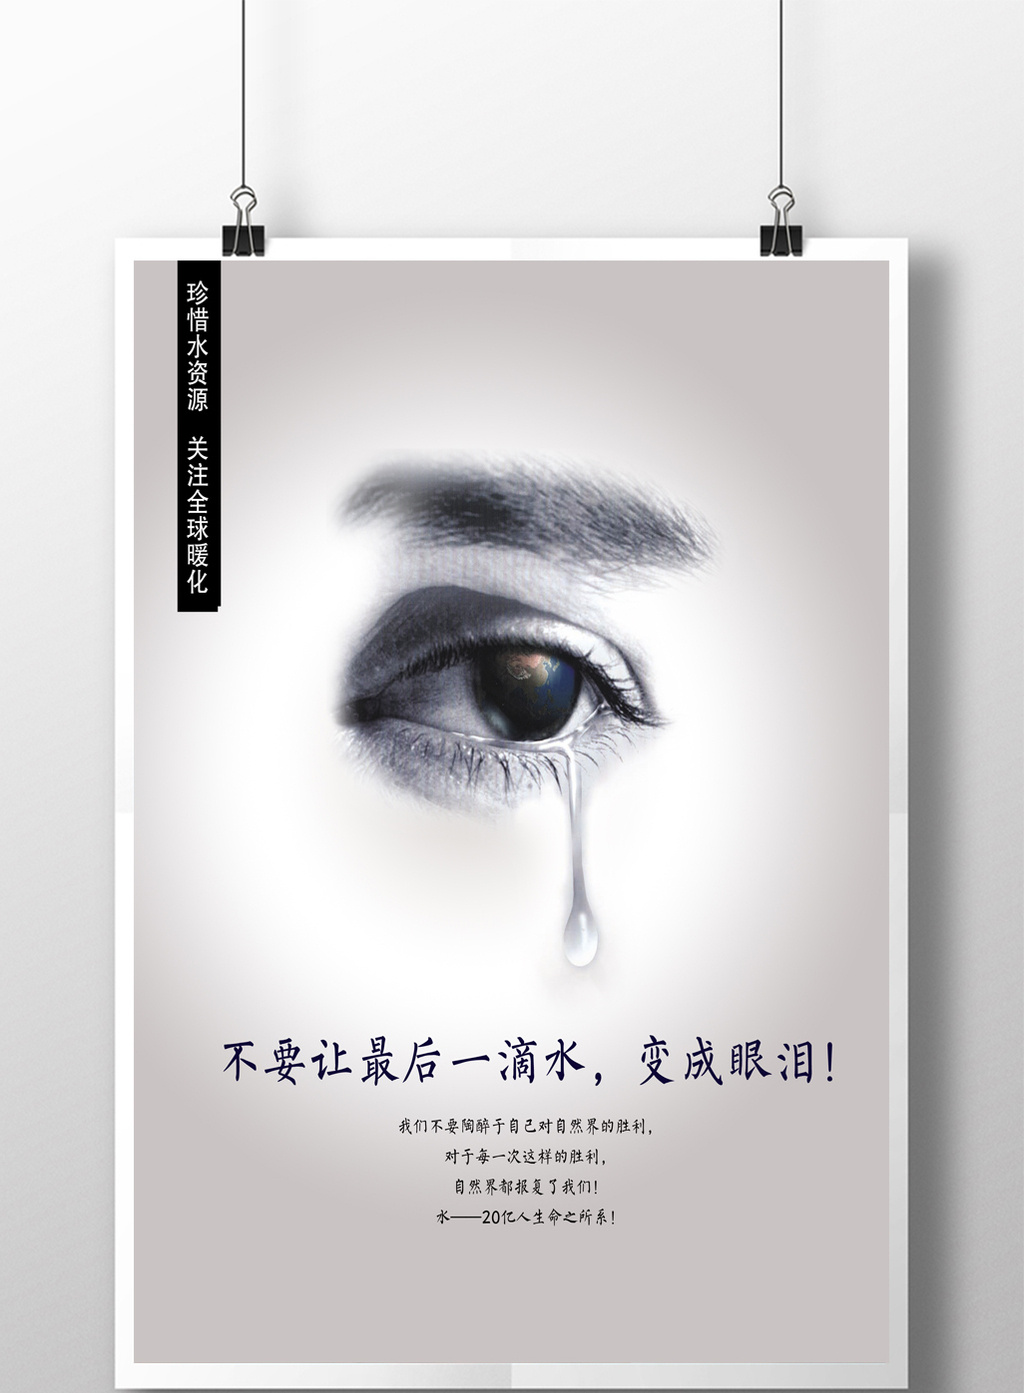 包图网提供精美好看的最后一滴眼泪公益海报素材免费下载,本次作品